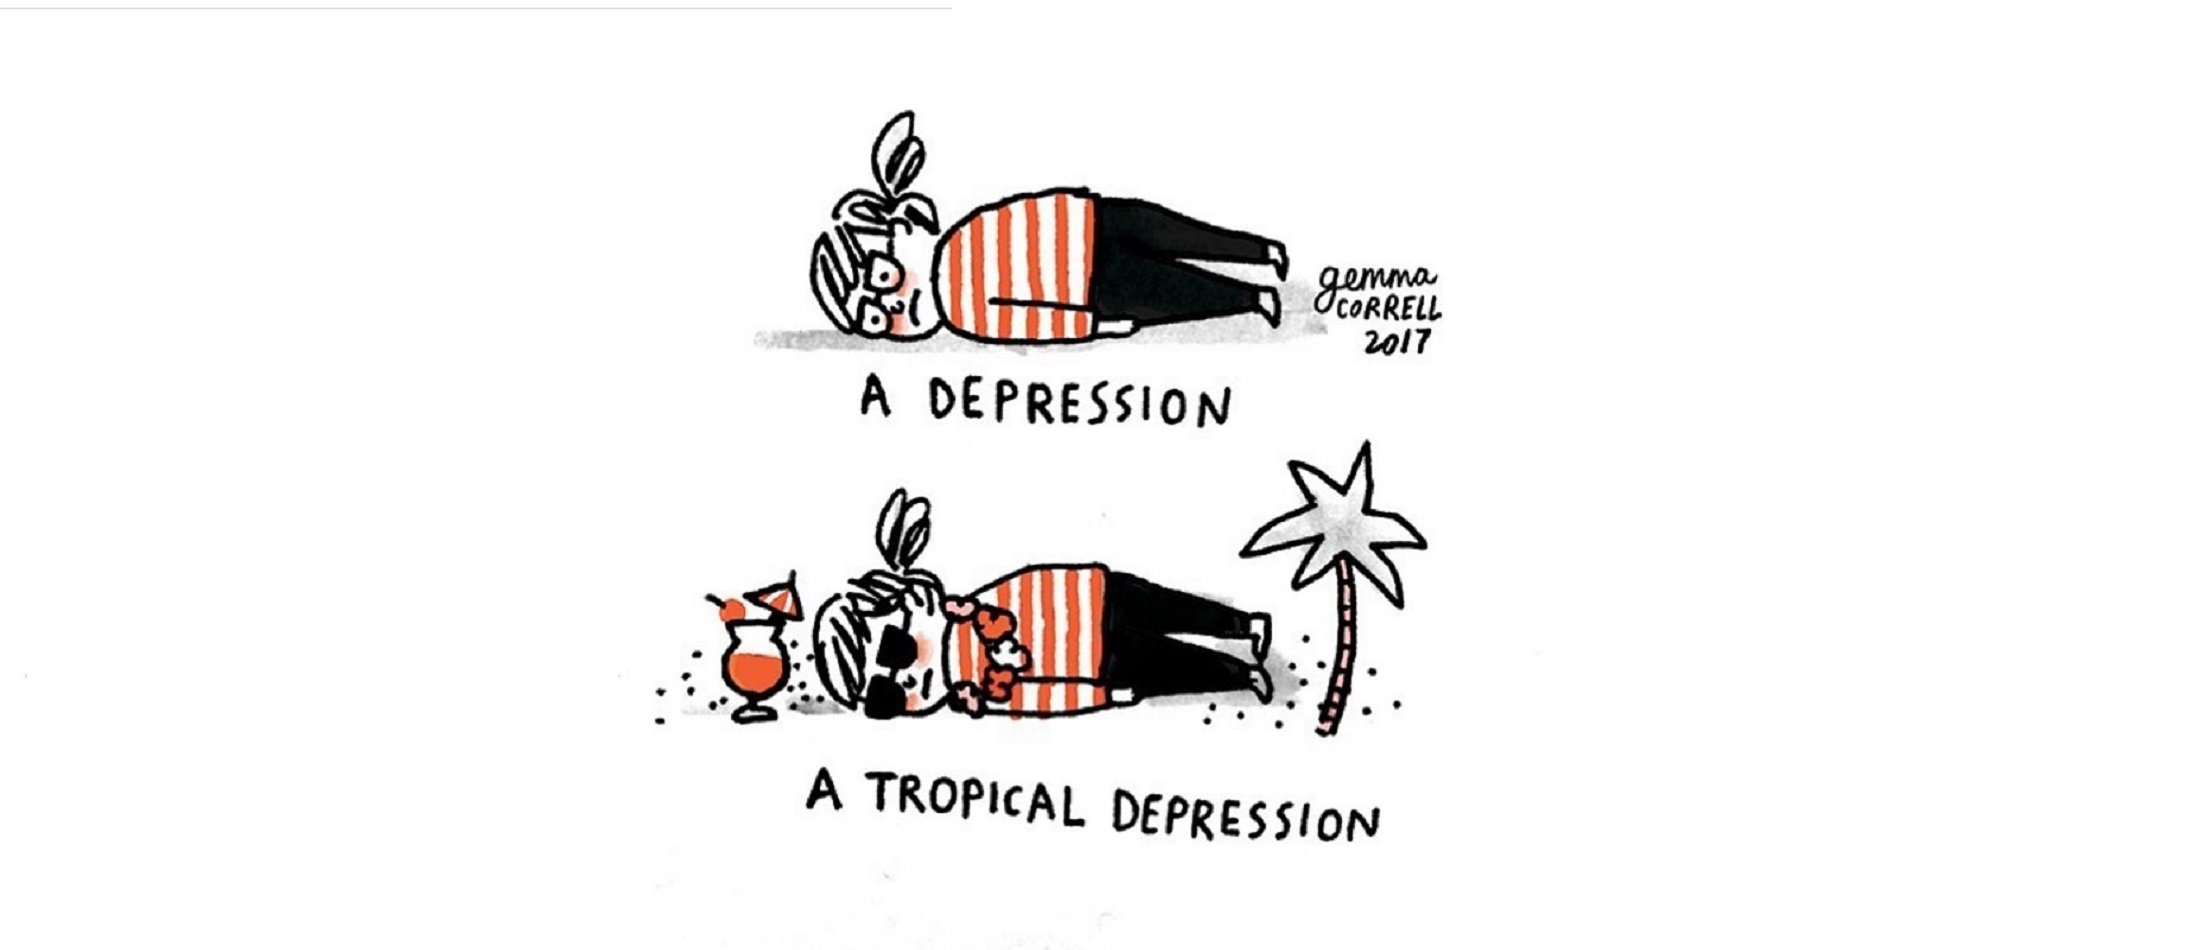 7 il·lustracions per parlar sense tabús d'ansietat i depressió